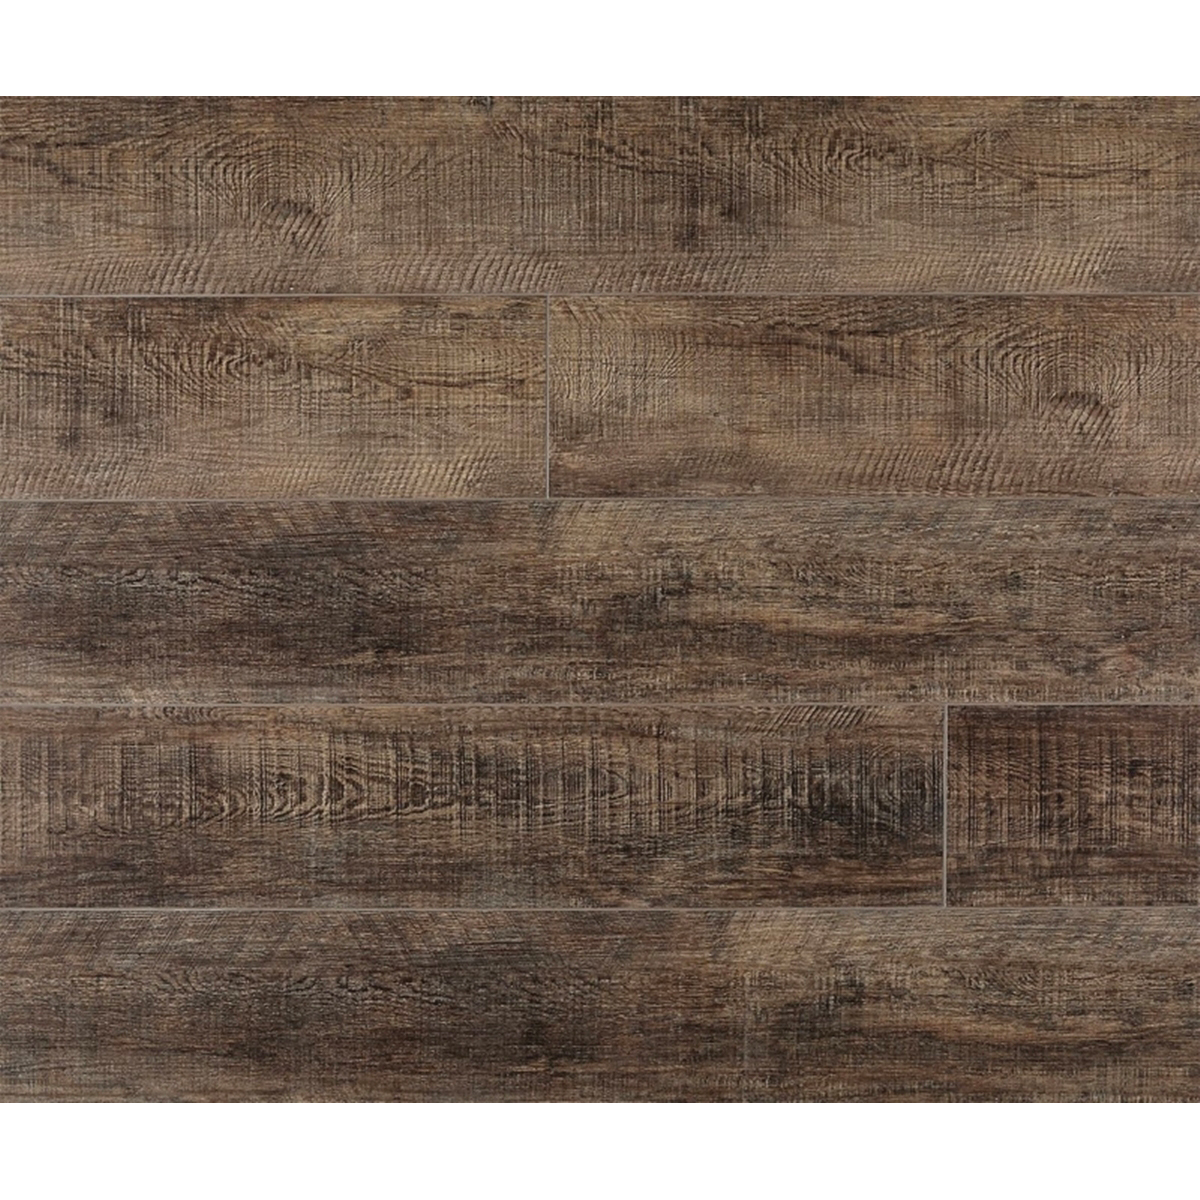 CVP102G05 Luxury Plank, 48 in L, 7 in W, Beveled Edge, Wood Look Pattern, Vinyl, Wine Barrel